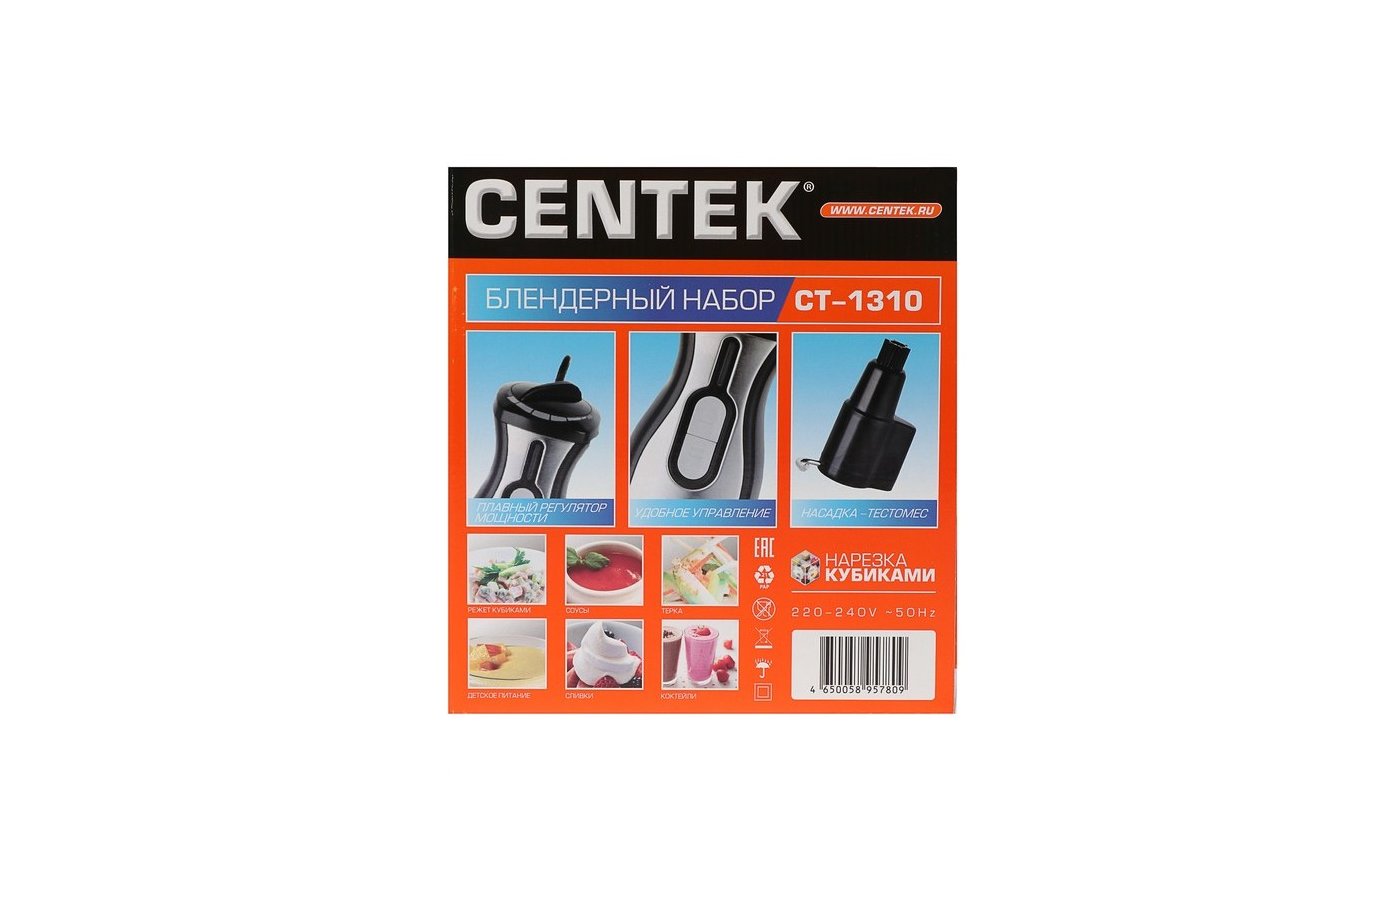 CENTEK блендерный набор ct1310. Держатель лезвия для CENTEK CT-1310. Запчасти на CENTEK CT-1310. CENTEK CT 1310 шестерня.